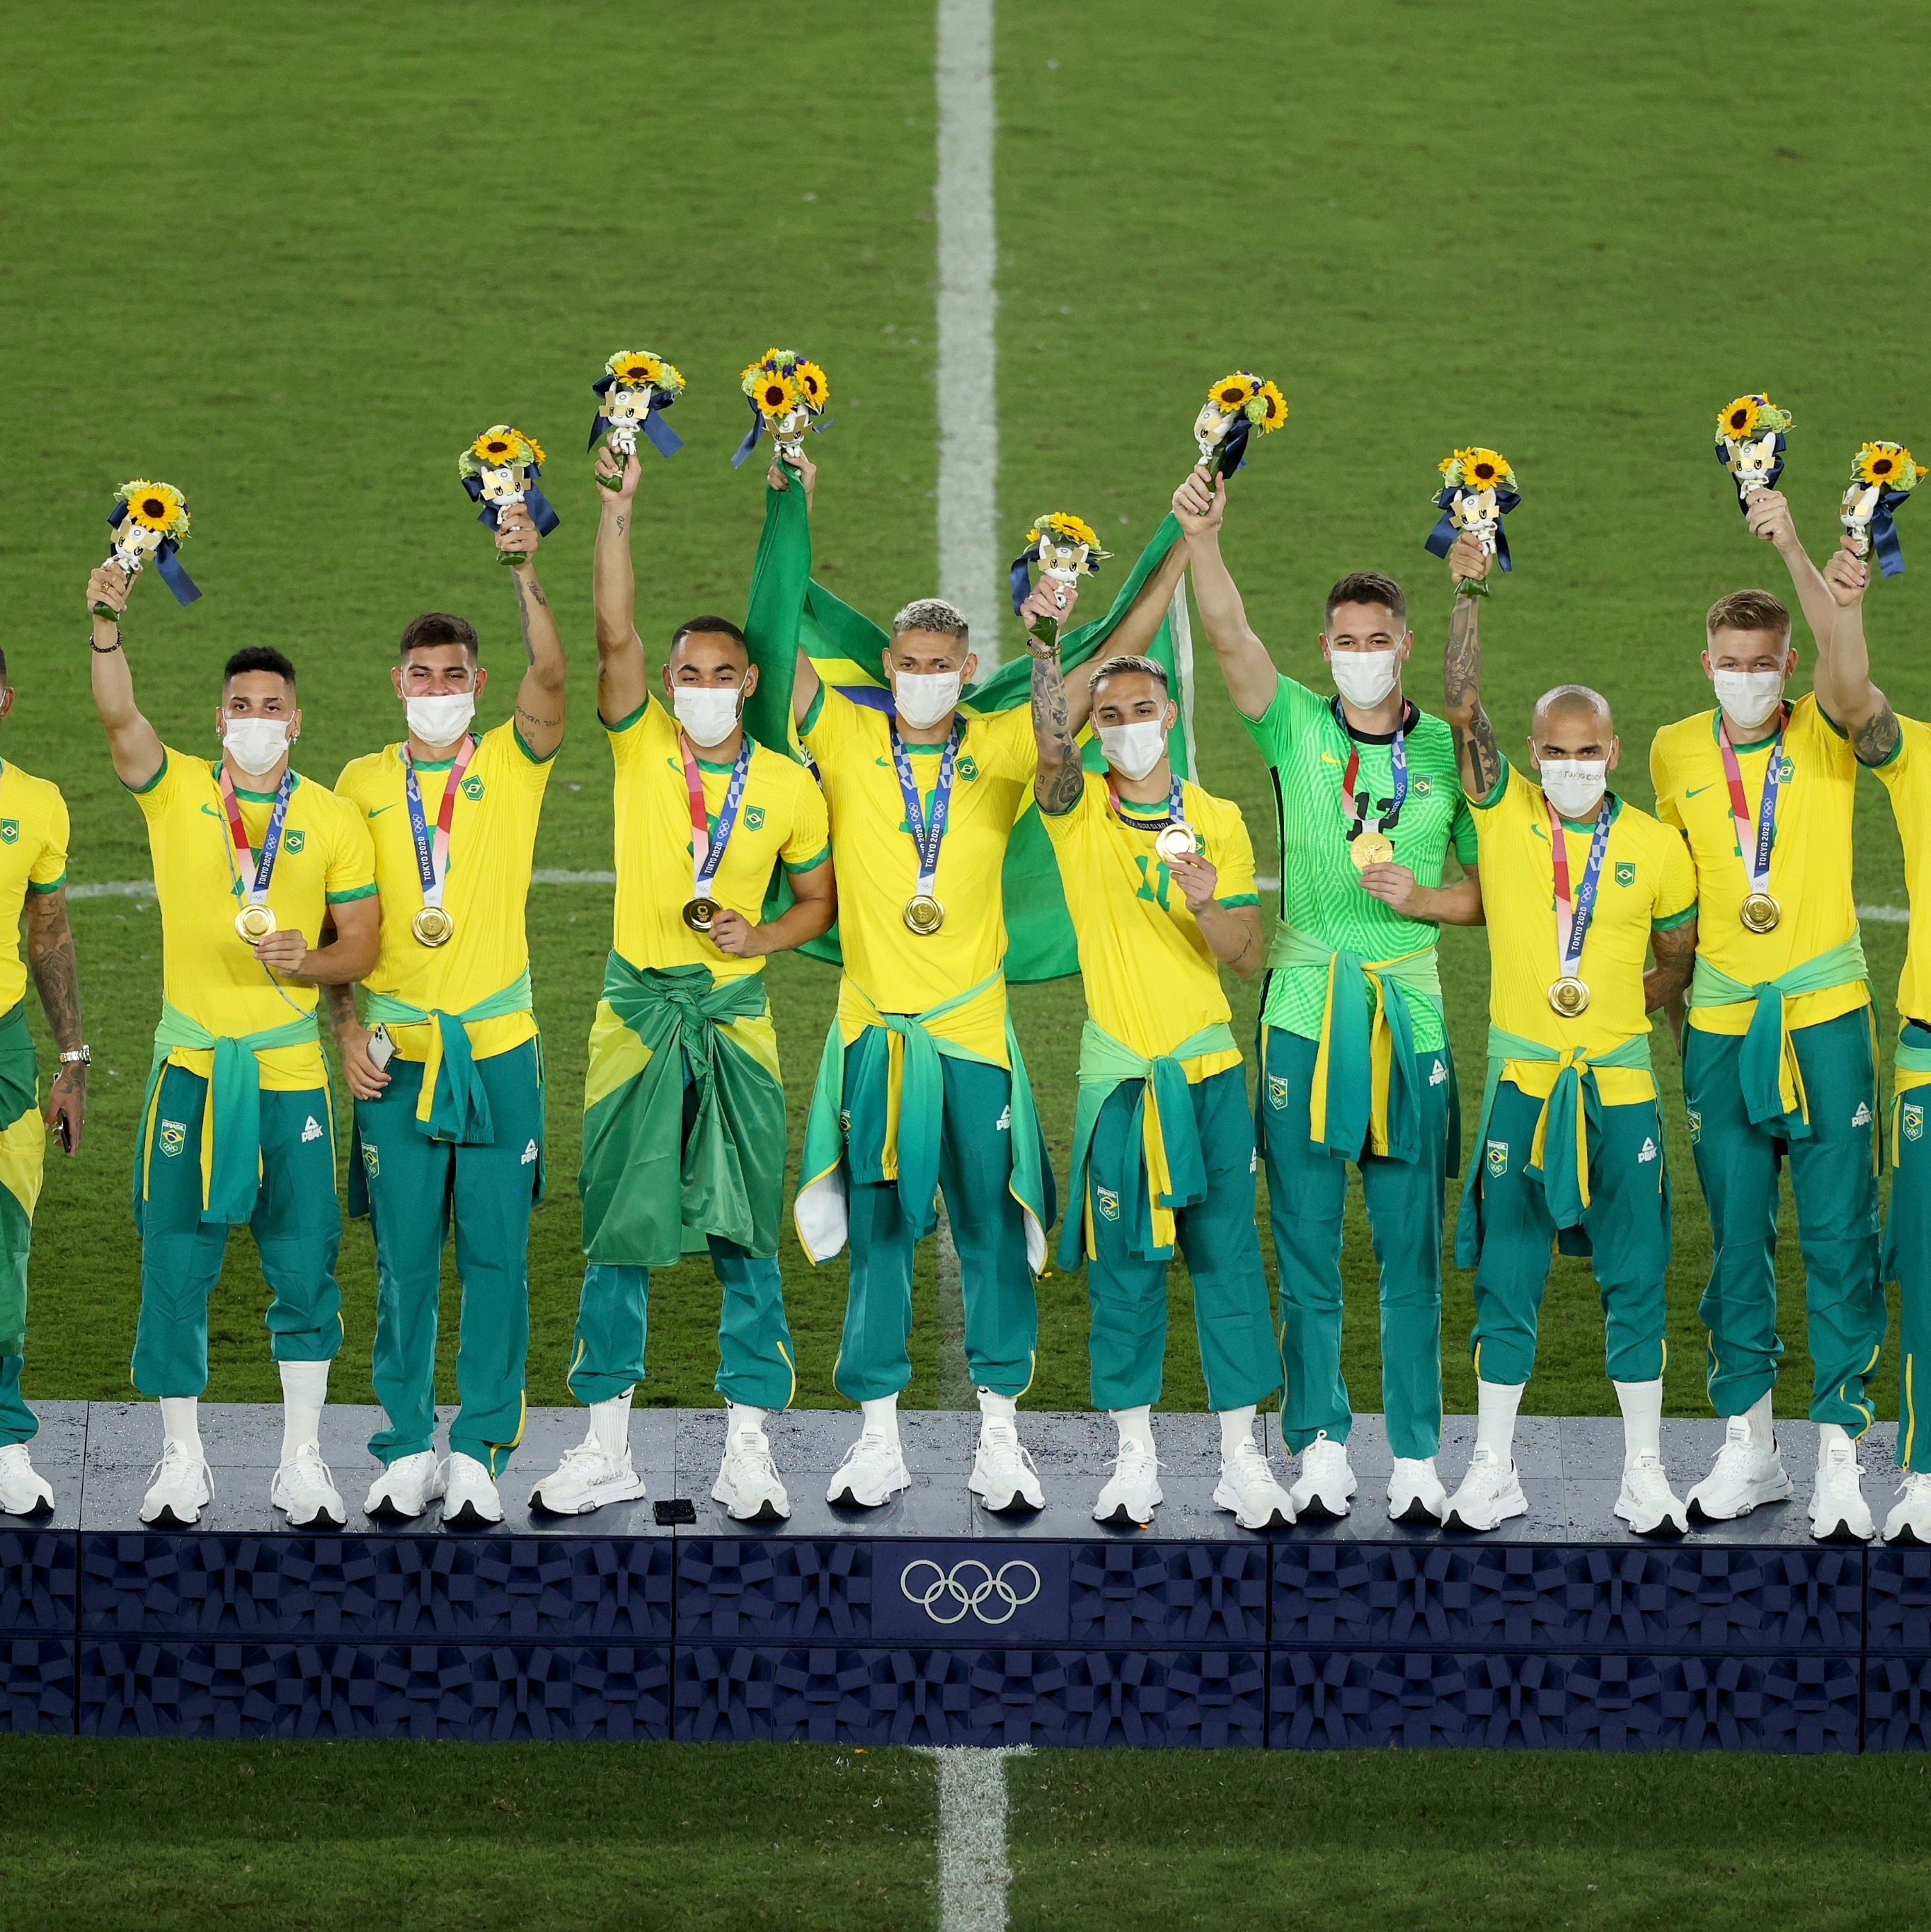 Campeões Olímpicos de futebol: da Grã-Bretanha ao Brasil